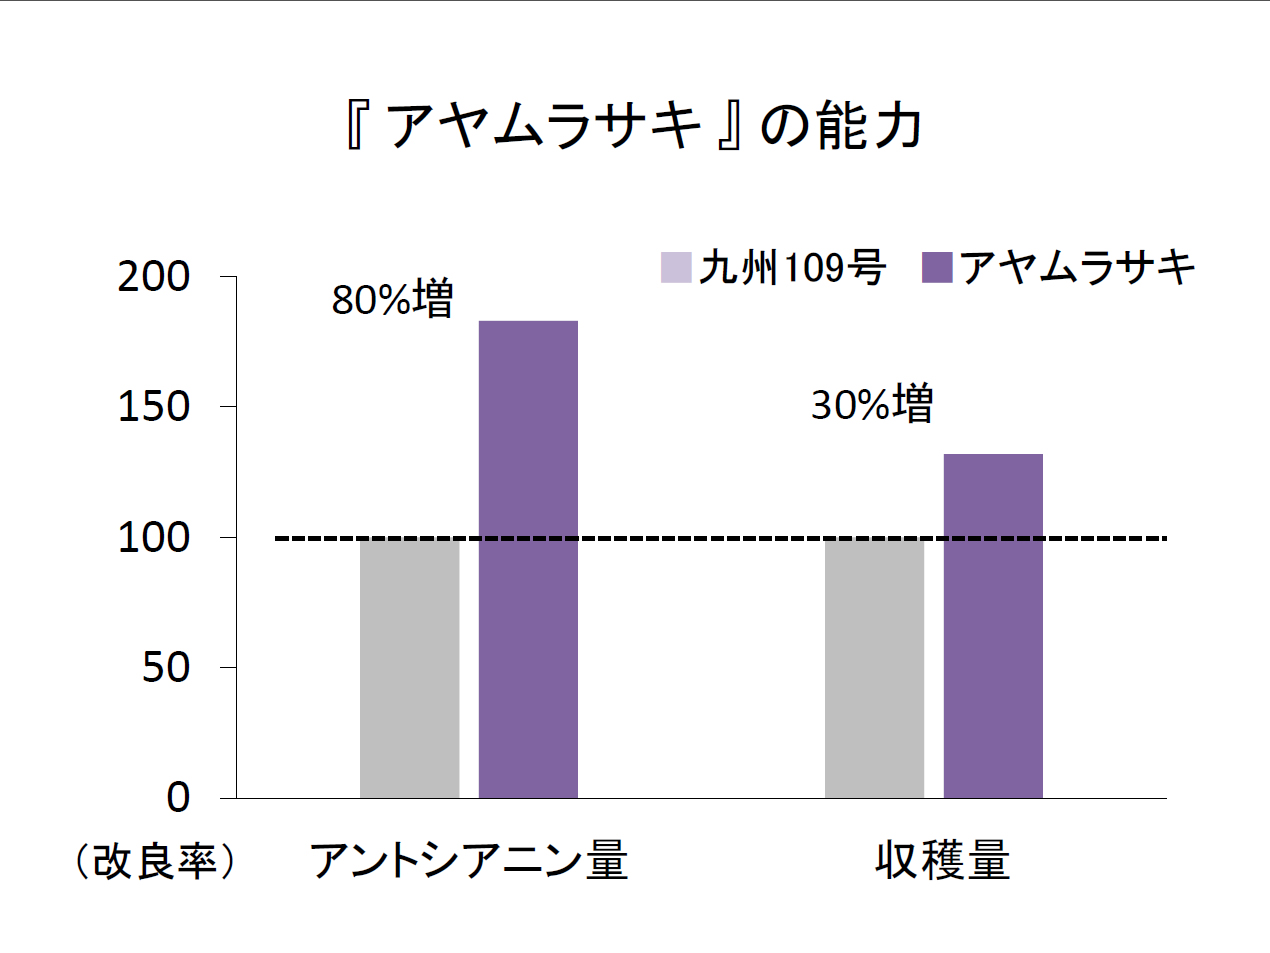 アヤムラサキのアントシアニン量は改良前の紫系のさつまいもより増えています。